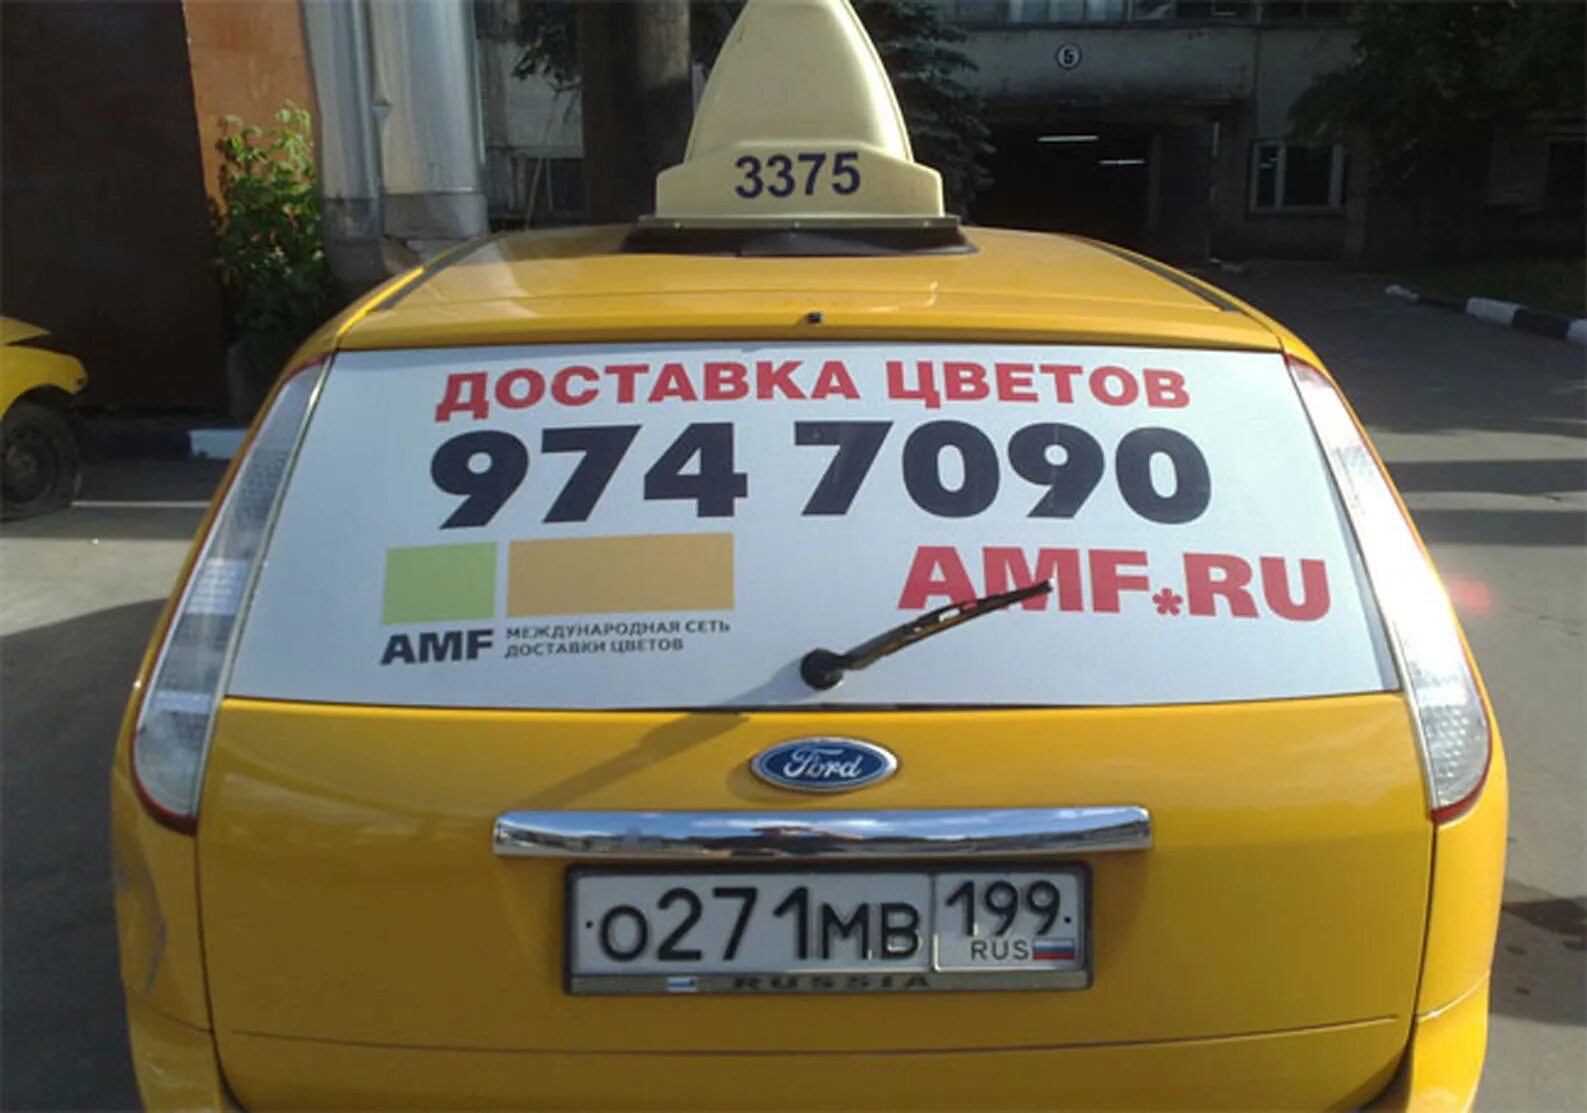 Такси 80 рублей. Реклама такси. Реклама такси на машине. Рекламные наклейки на авто. Реклама на заднем стекле такси.